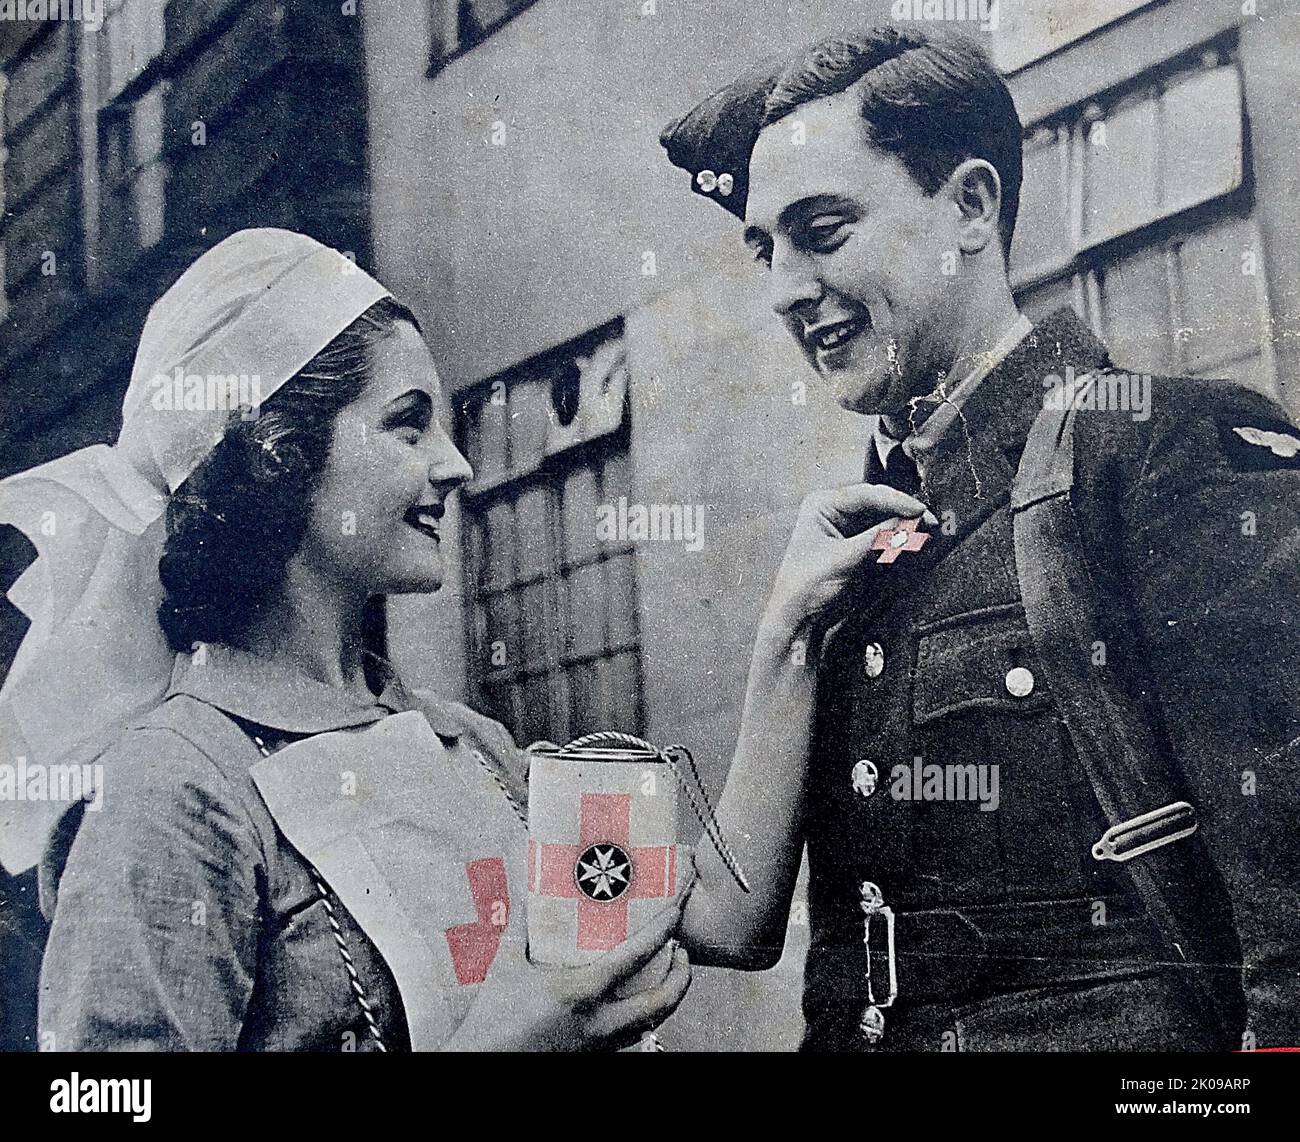 Krankenschwester Dorothy Hyson verkauft Flaggen an einen britischen Soldaten für das Britische Rote Kreuz. Frontabdeckung der Abbildung. Stockfoto